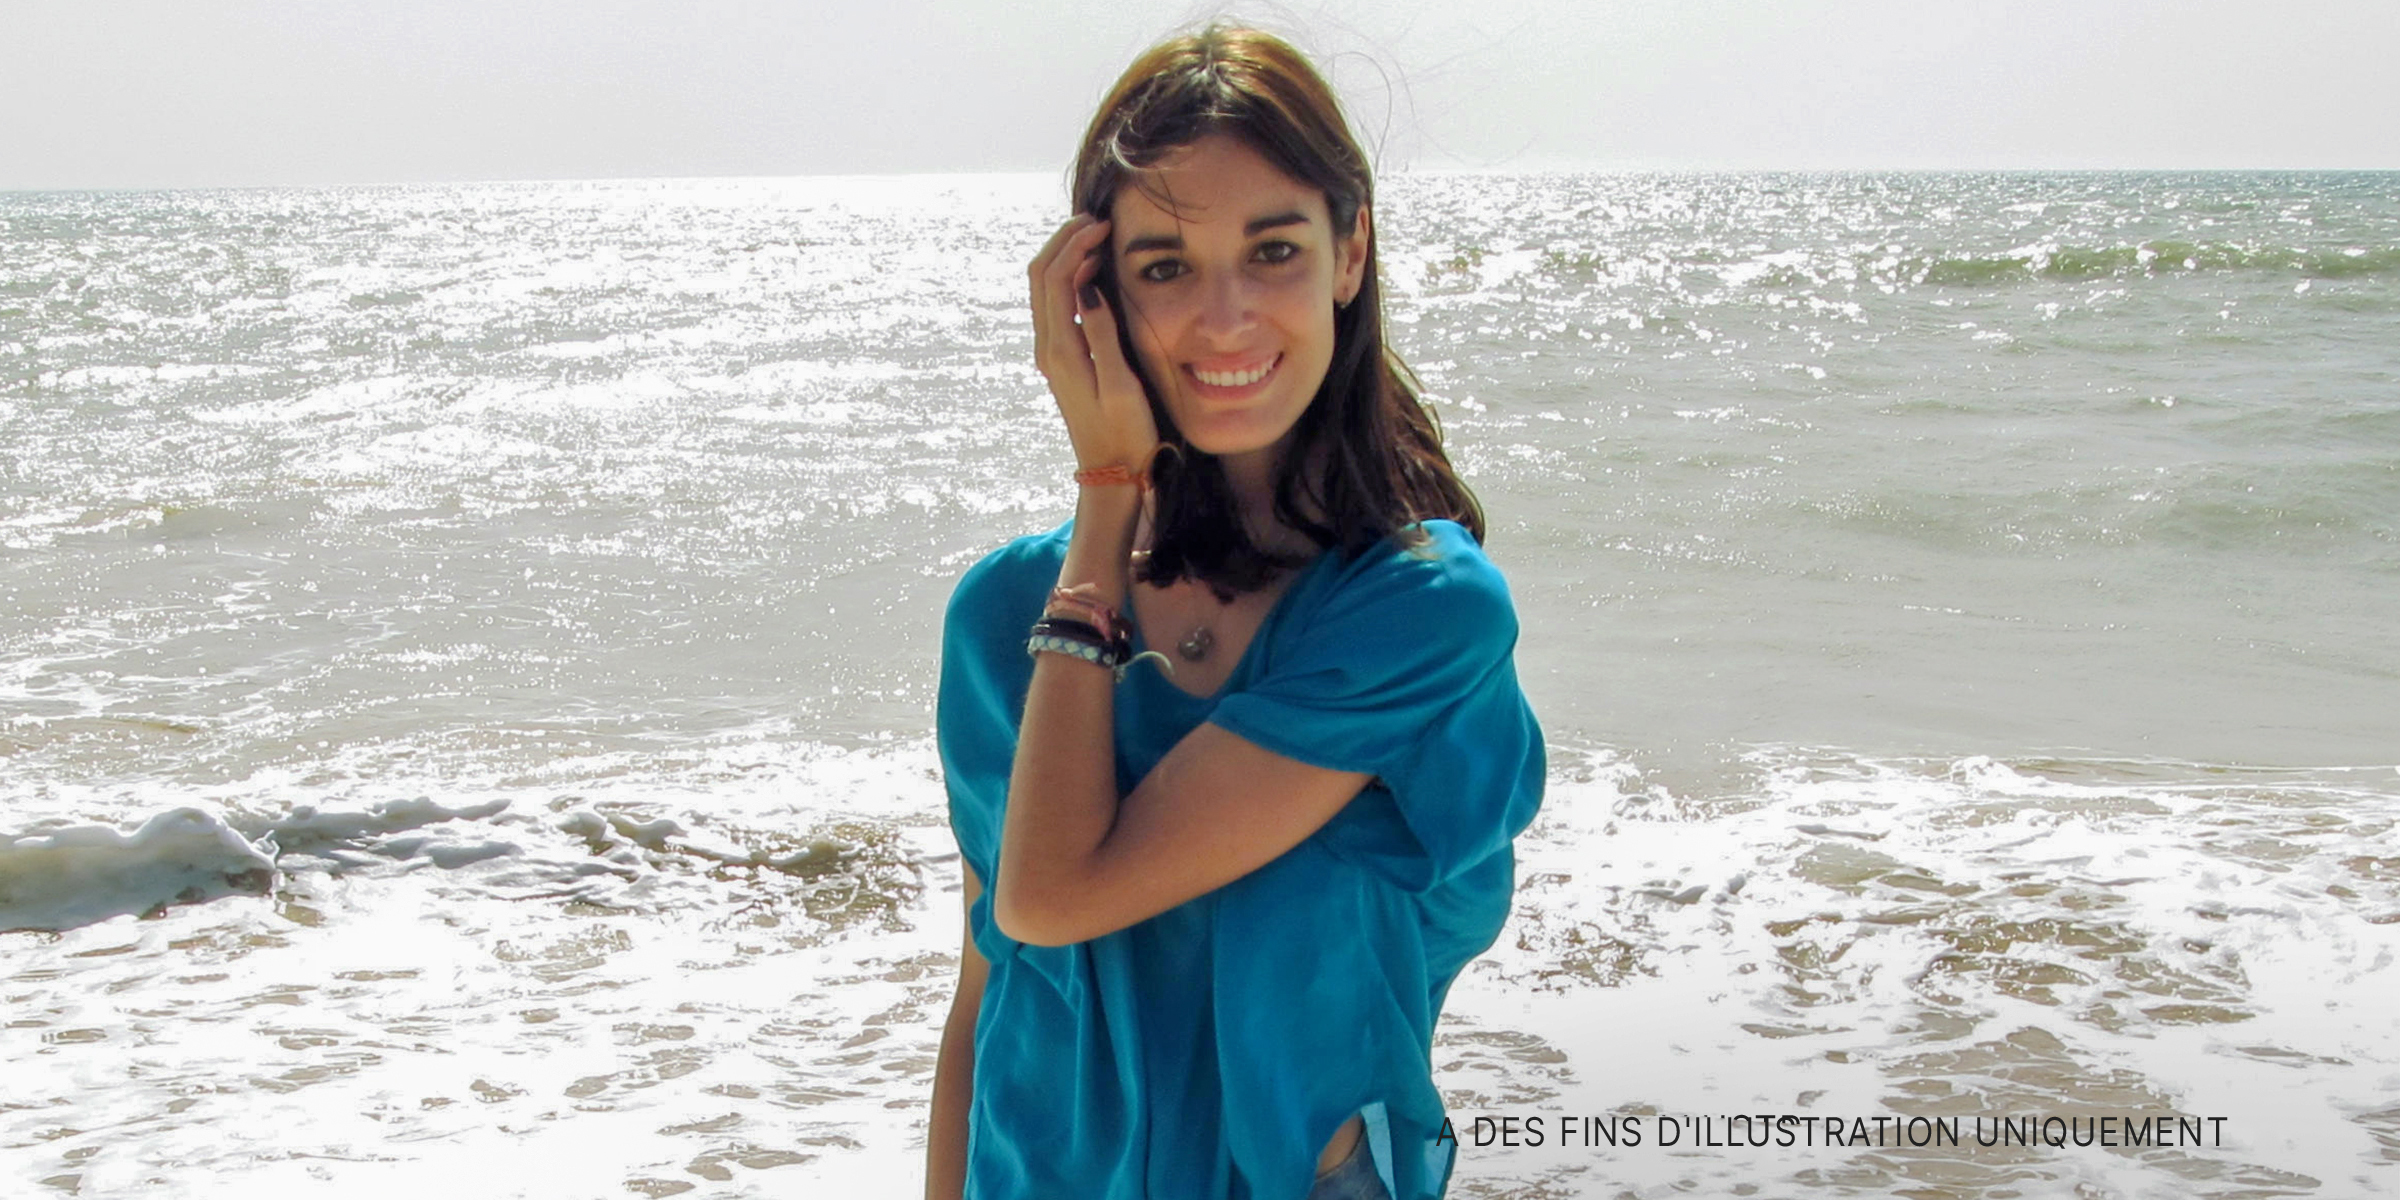 Une jeune femme sourit alors qu'elle se trouve dans l'eau sur une plage | Source : Flickr/Por mi tripa.../CC BY 2.0